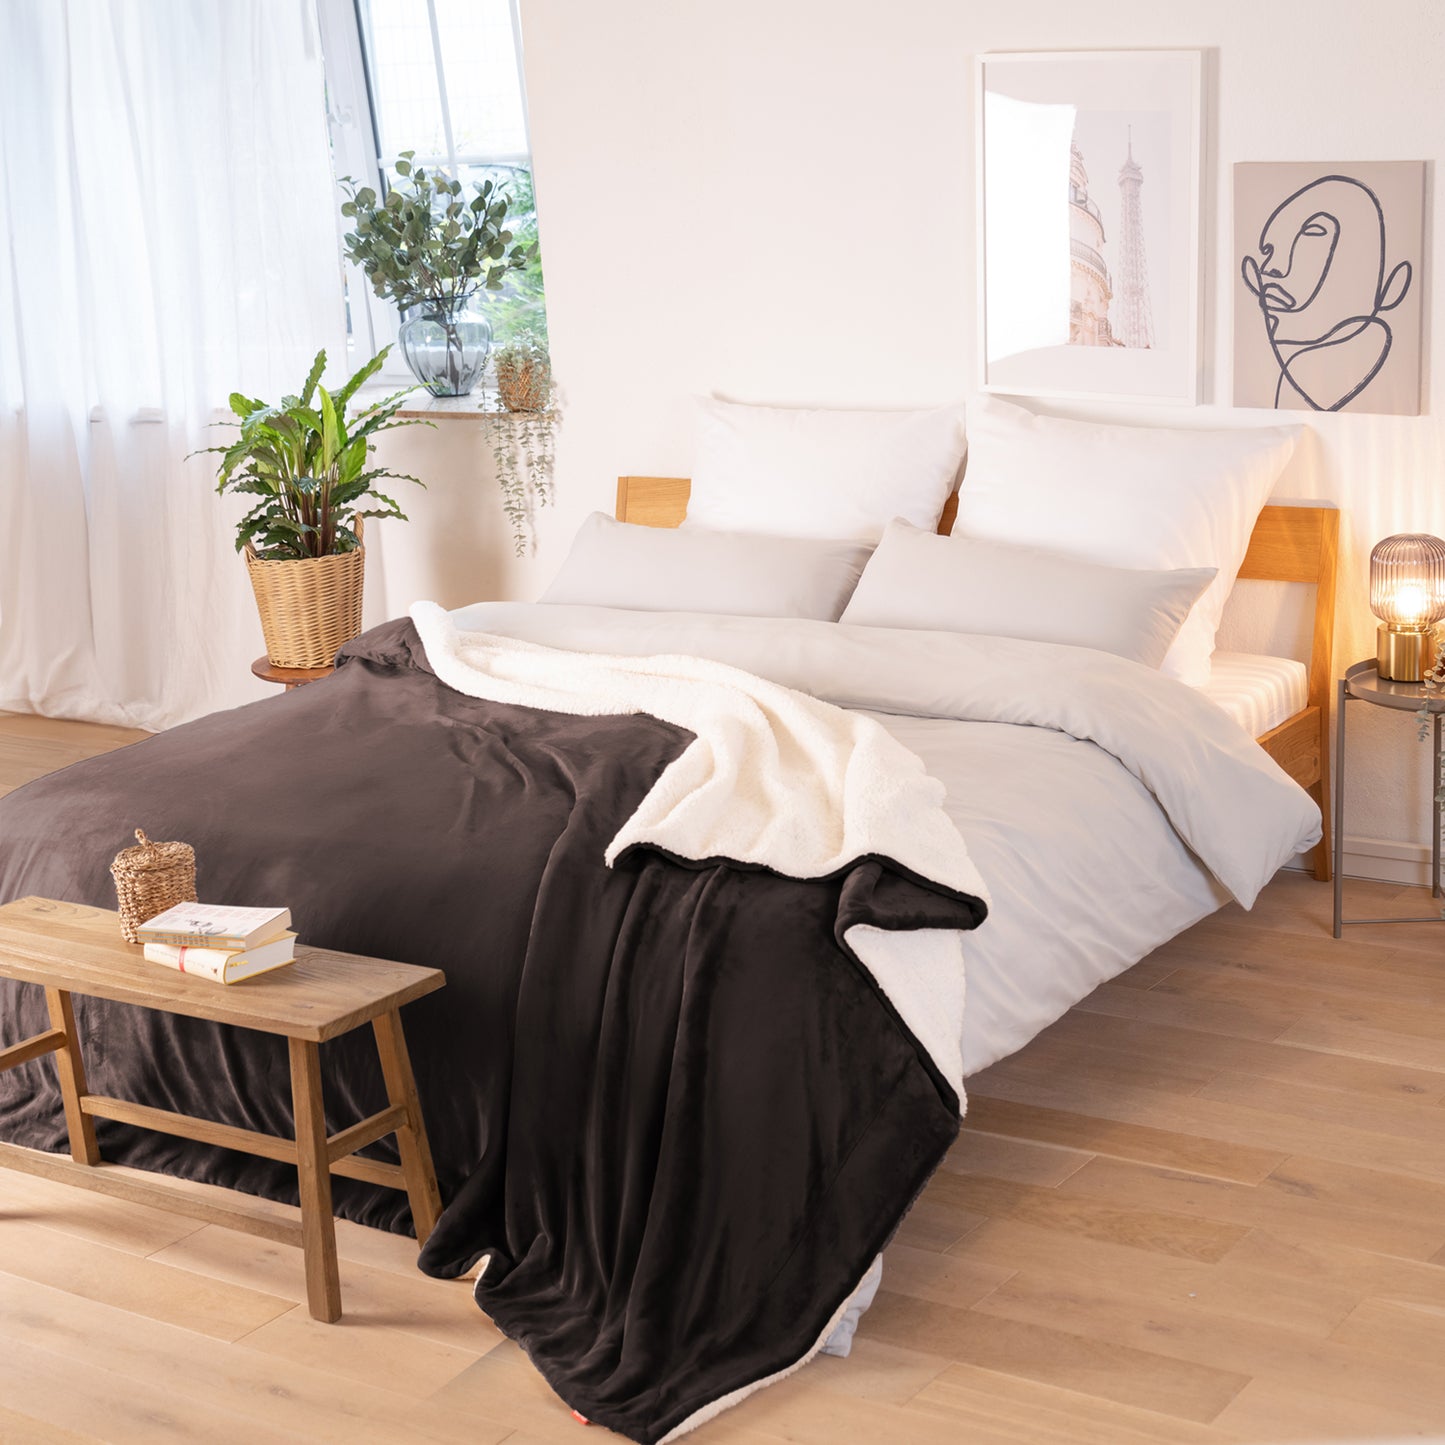 Braune Decke mit weißer Fleece-Innenseite, ausgebreitet über ein Bett in einem Raum mit natürlicher Beleuchtung, Pflanzen und Bildern im Hintergrund.